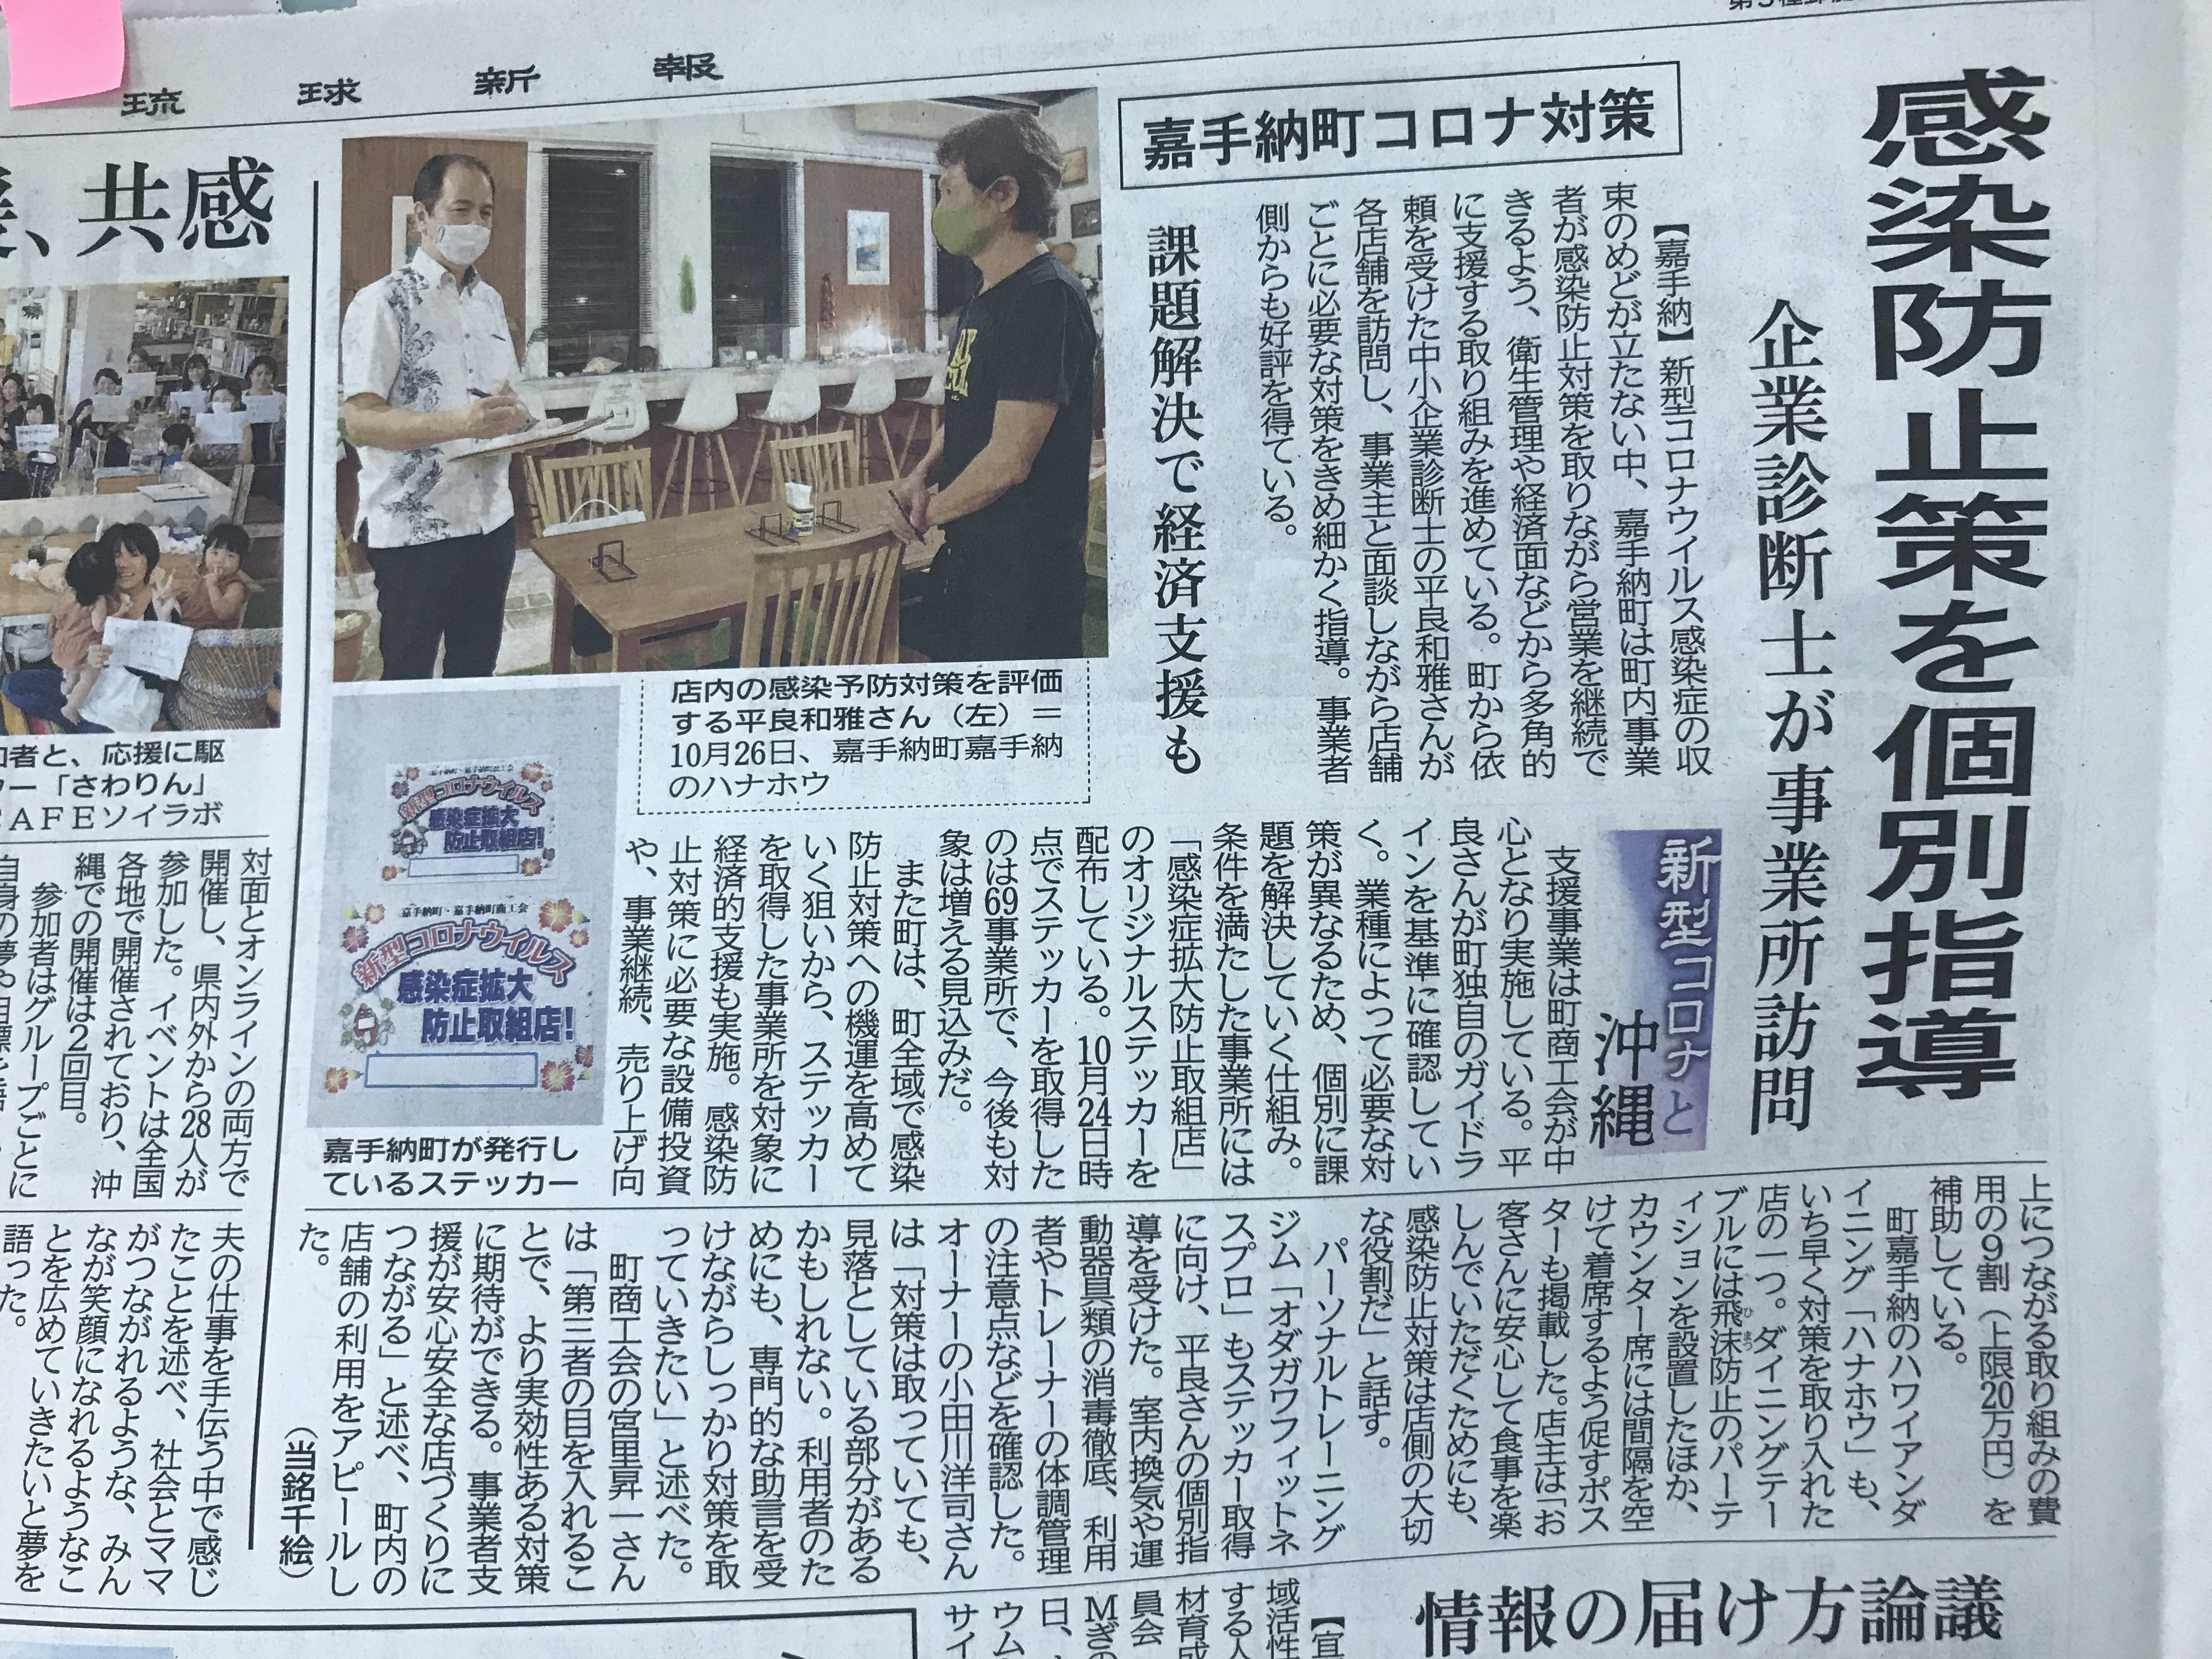 嘉手納町商工会の取組が琉球新報に掲載されました